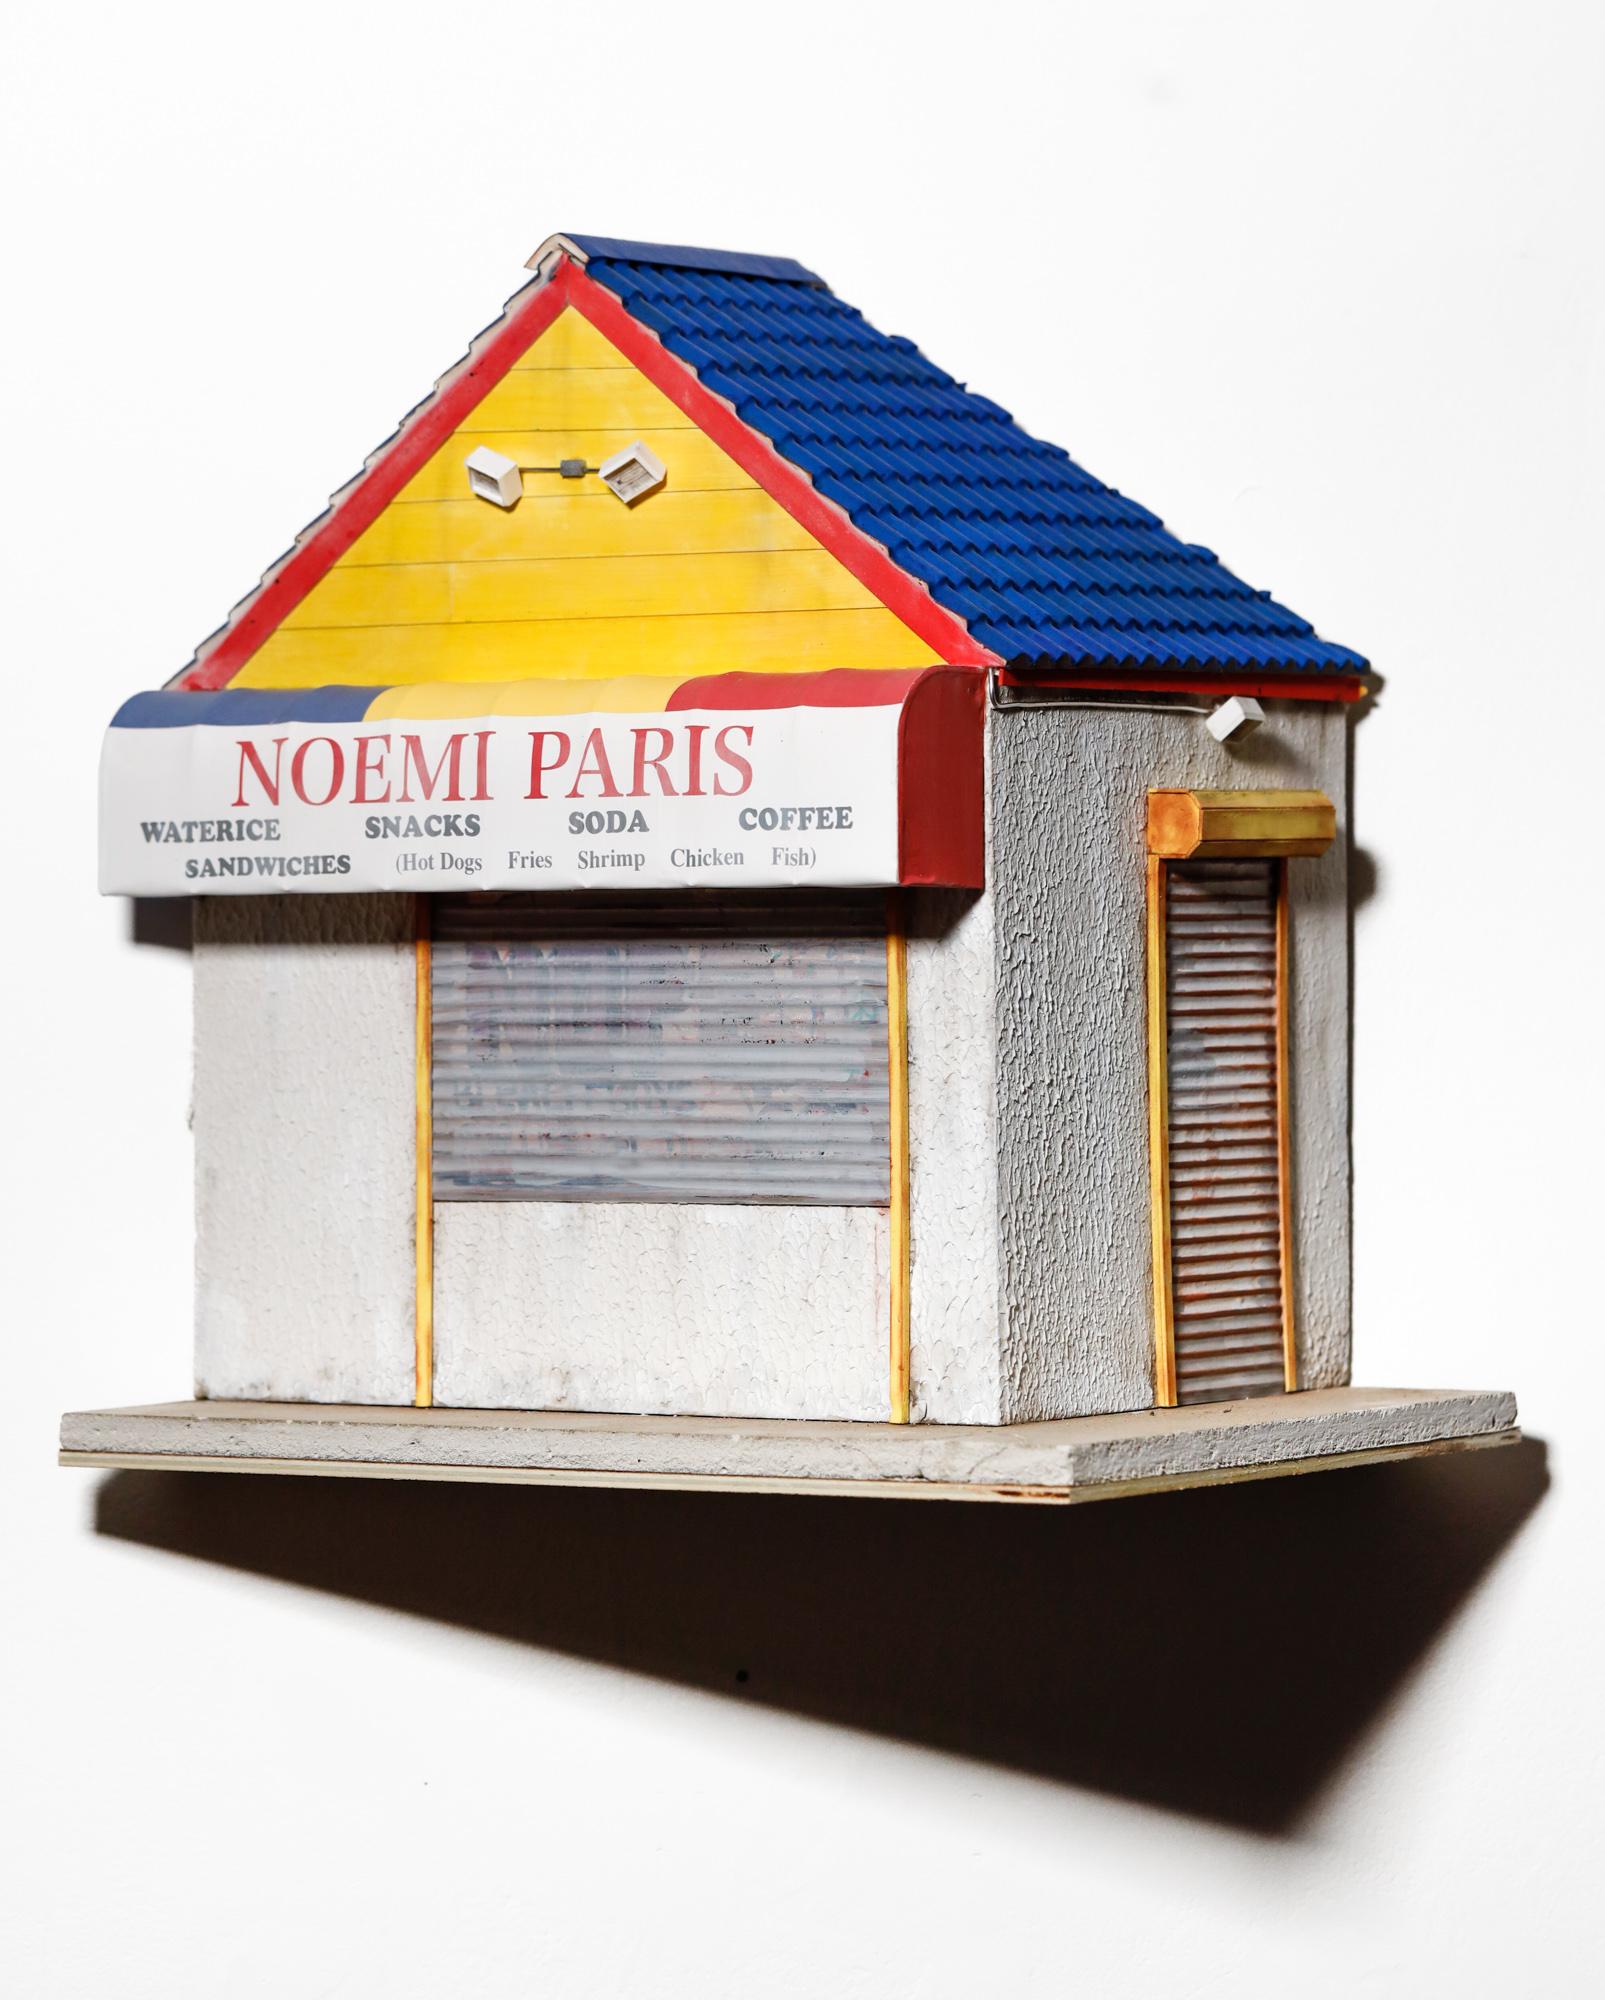 « Noemi Paris » miniature hyperréaliste, architecture, bâtiment, paysage urbain